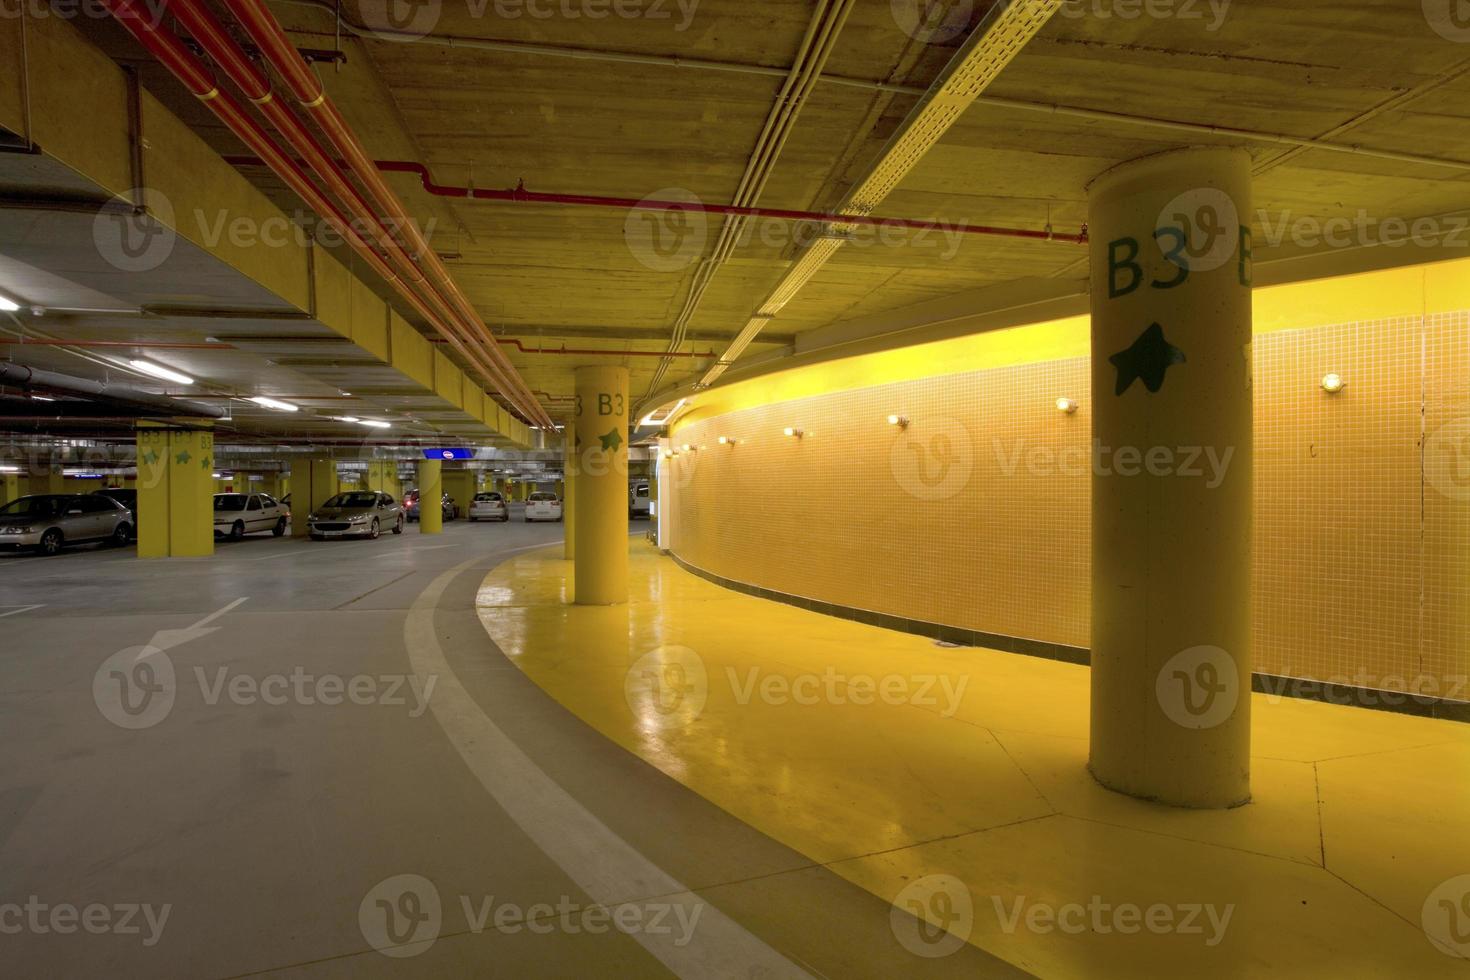 Iluminación y señalización luminosa en un aparcamiento subterráneo de un centro comercial, España foto